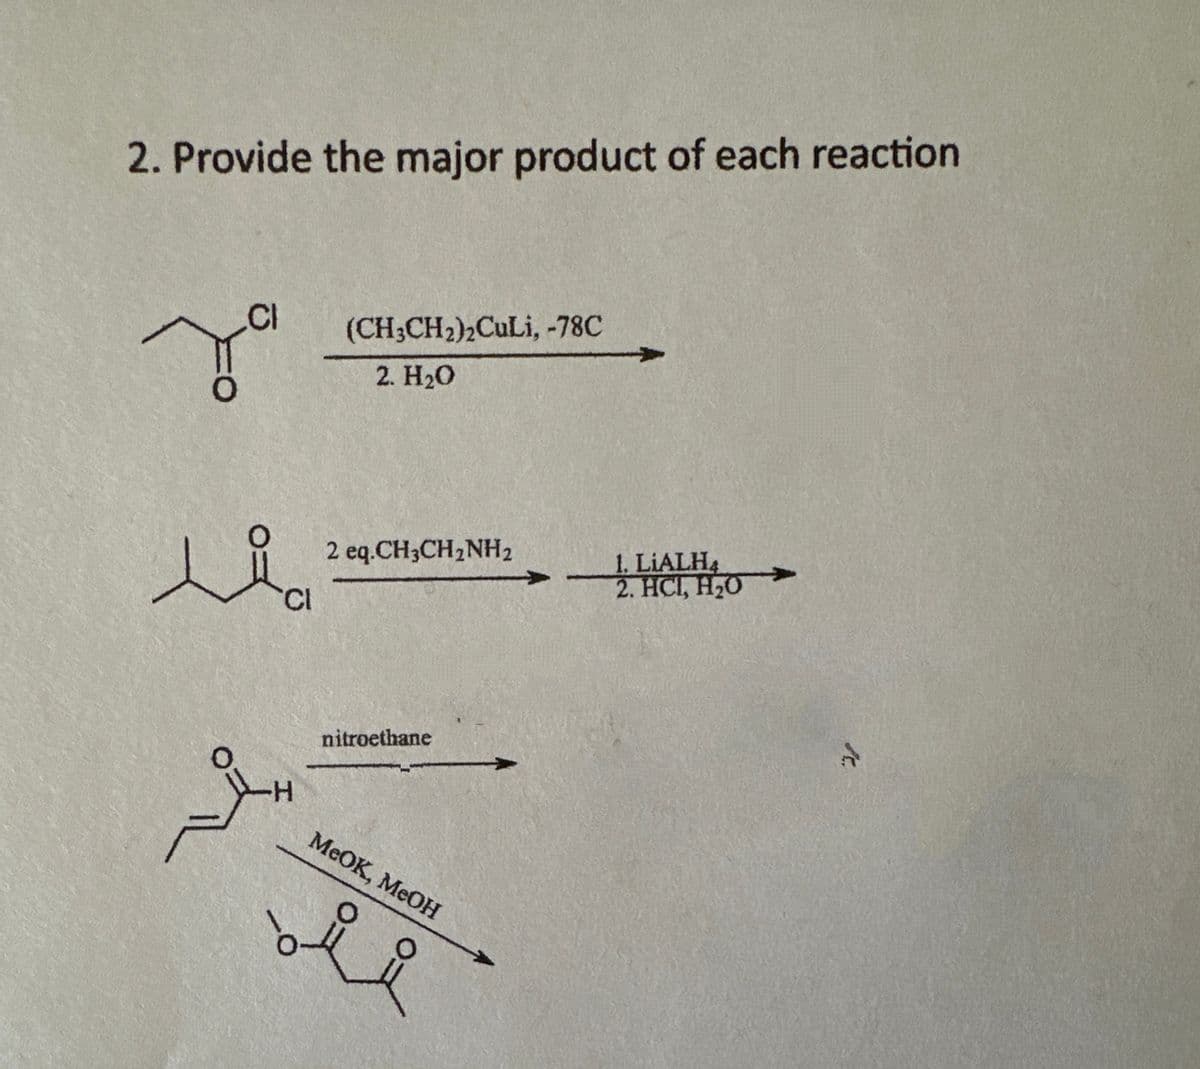 2. Provide the major product of each reaction
за
Li
Cl
(CH3CH2)2CuLi, -78C
2. H₂O
2 eq.CH3CH2NH2
1. LIALH4
2. HCI, H₂O
H
nitroethane
MeOK, MeOH
ii
1.